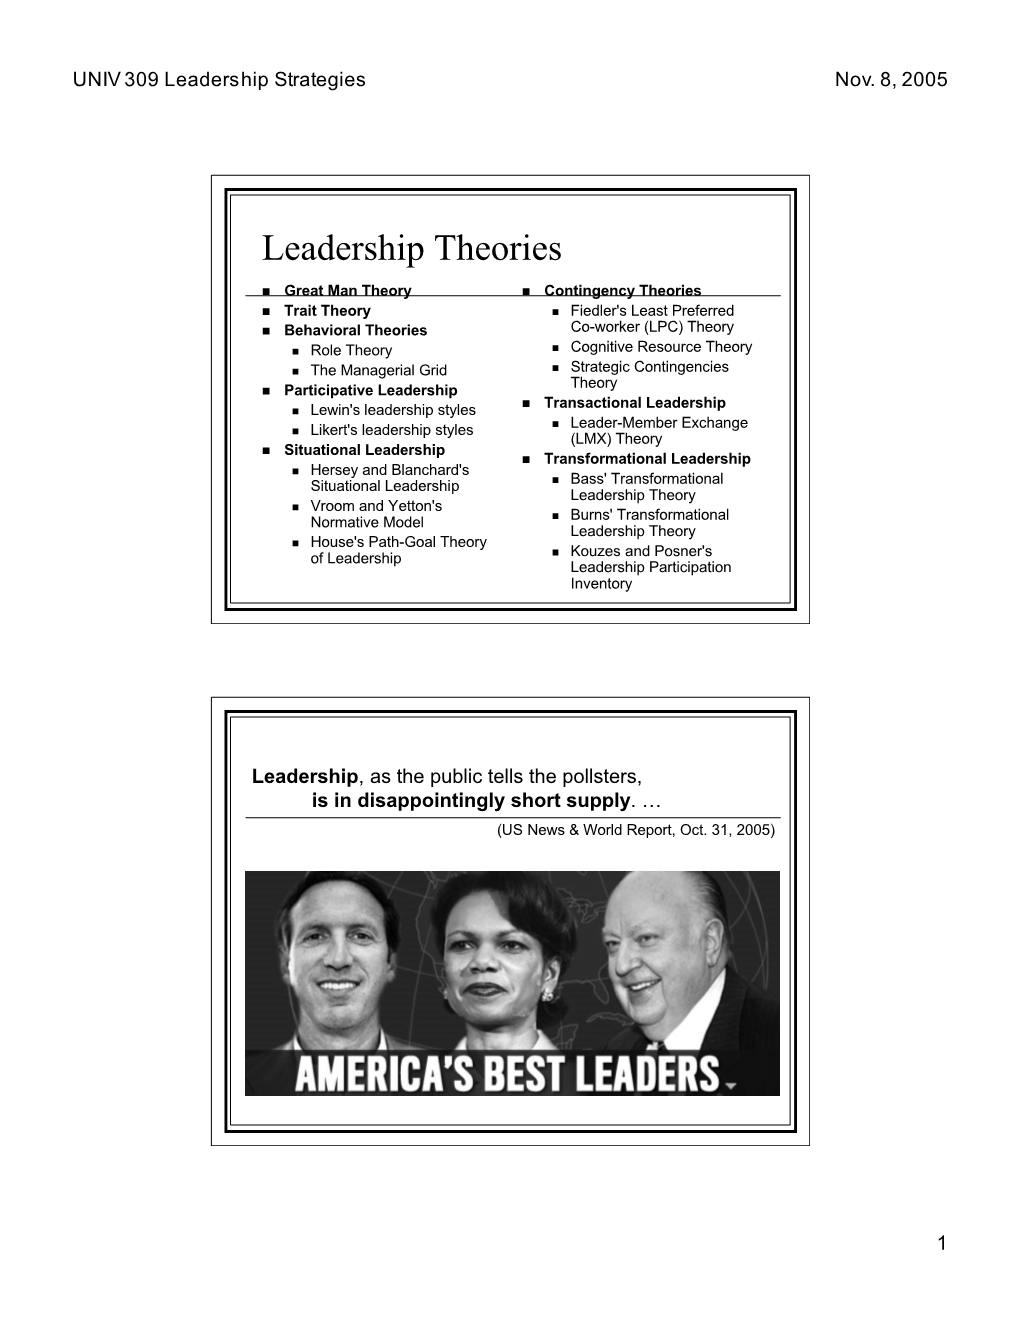 Leadership Strategies Nov